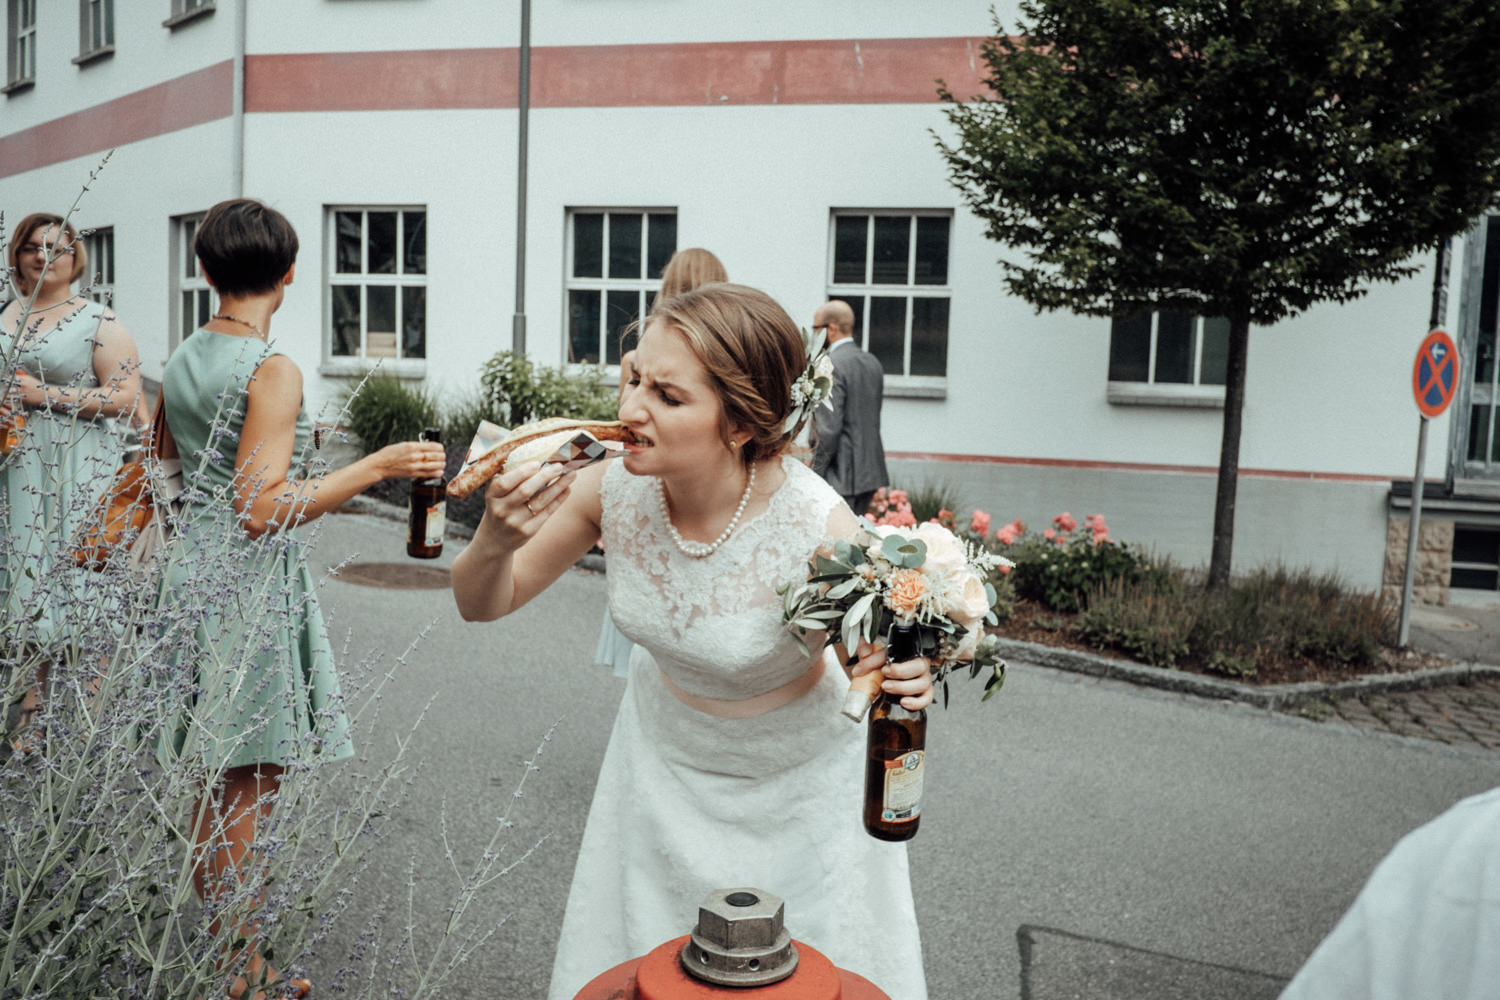 Zelthochzeit-Inspiration-Hochzeitsreportage-natürlich-Hessenhof-Coburg-Oberfranken-Aachen-Hochzeitsfotograf-Kevin Biberbach-KEVIN Fotografie-Junebug-Hochzeitswahn-082.jpg